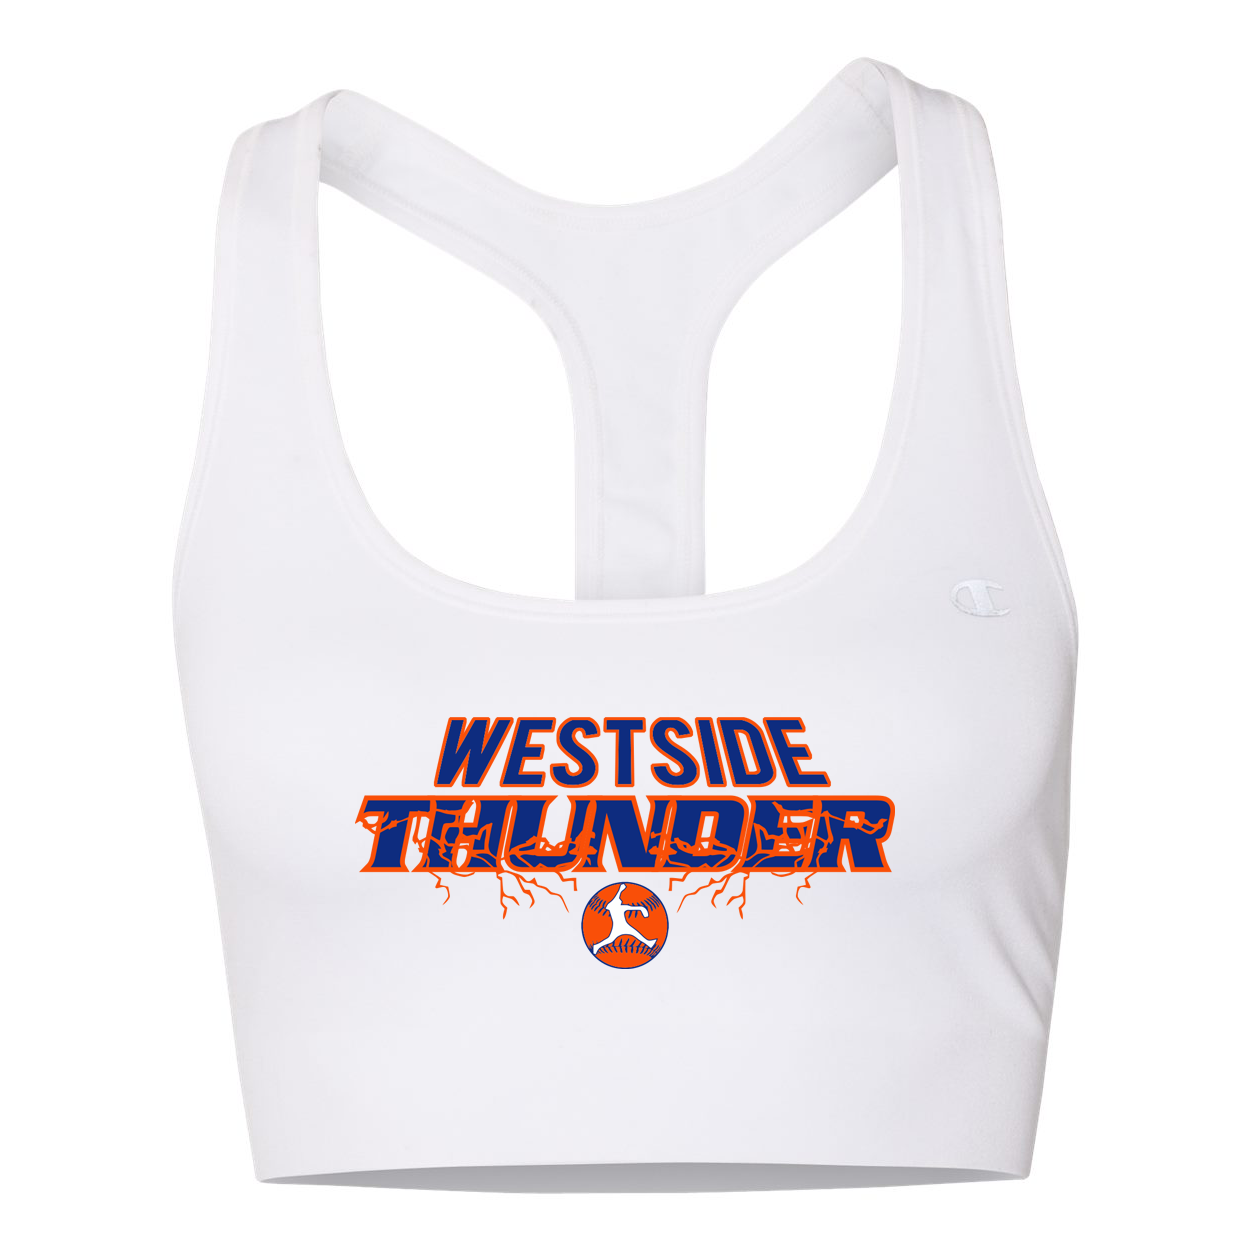 Westside Thunder Champion Sports Bra